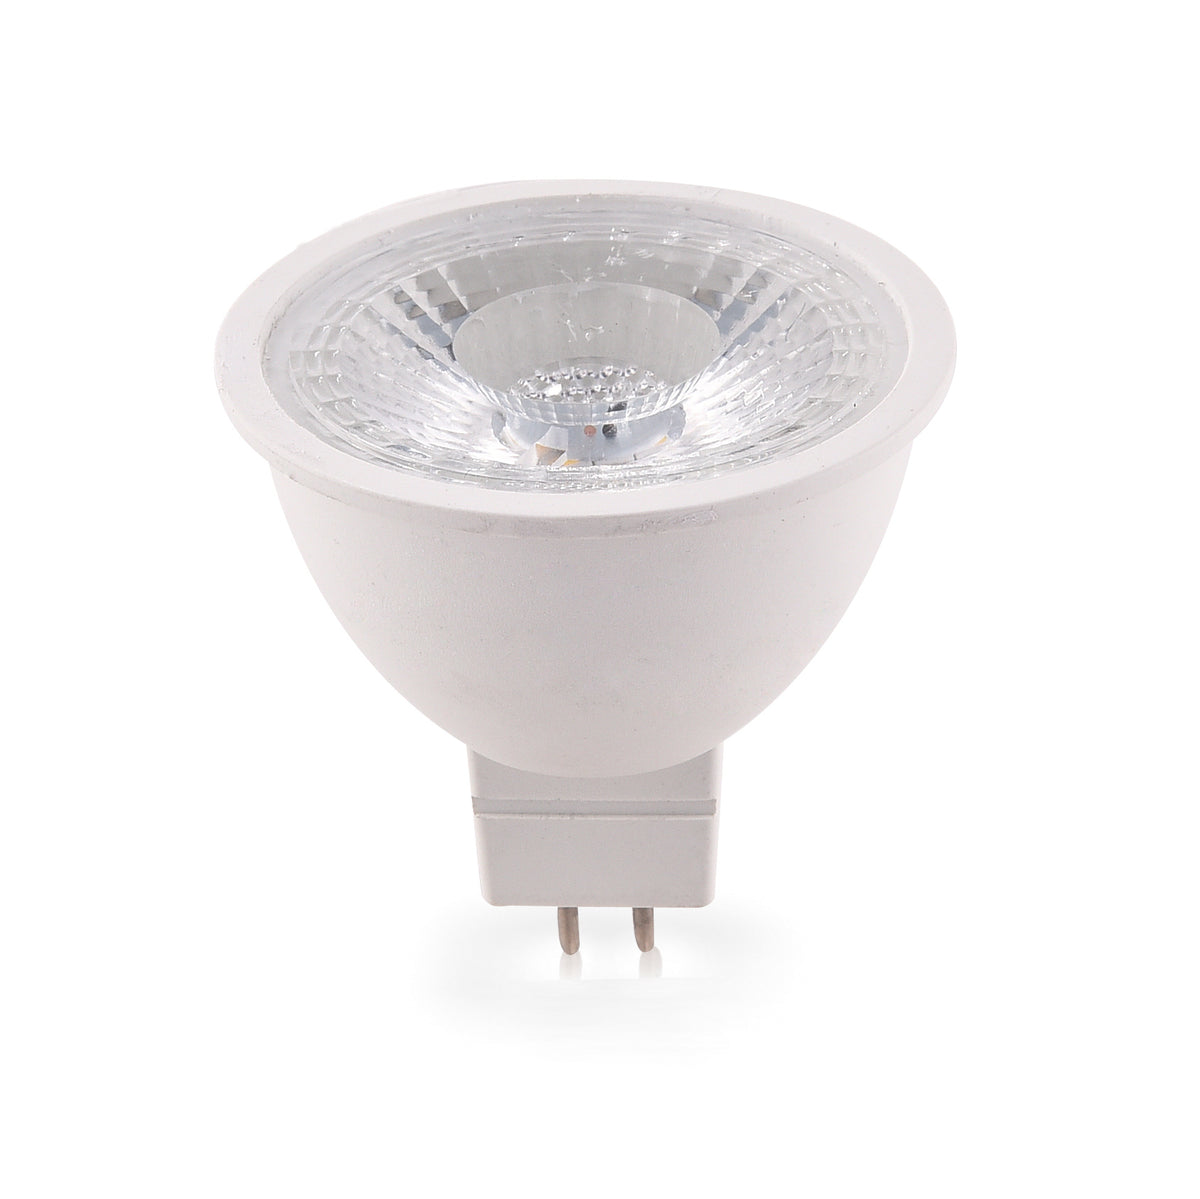 Bulb GU5.3 350lm (warm white)